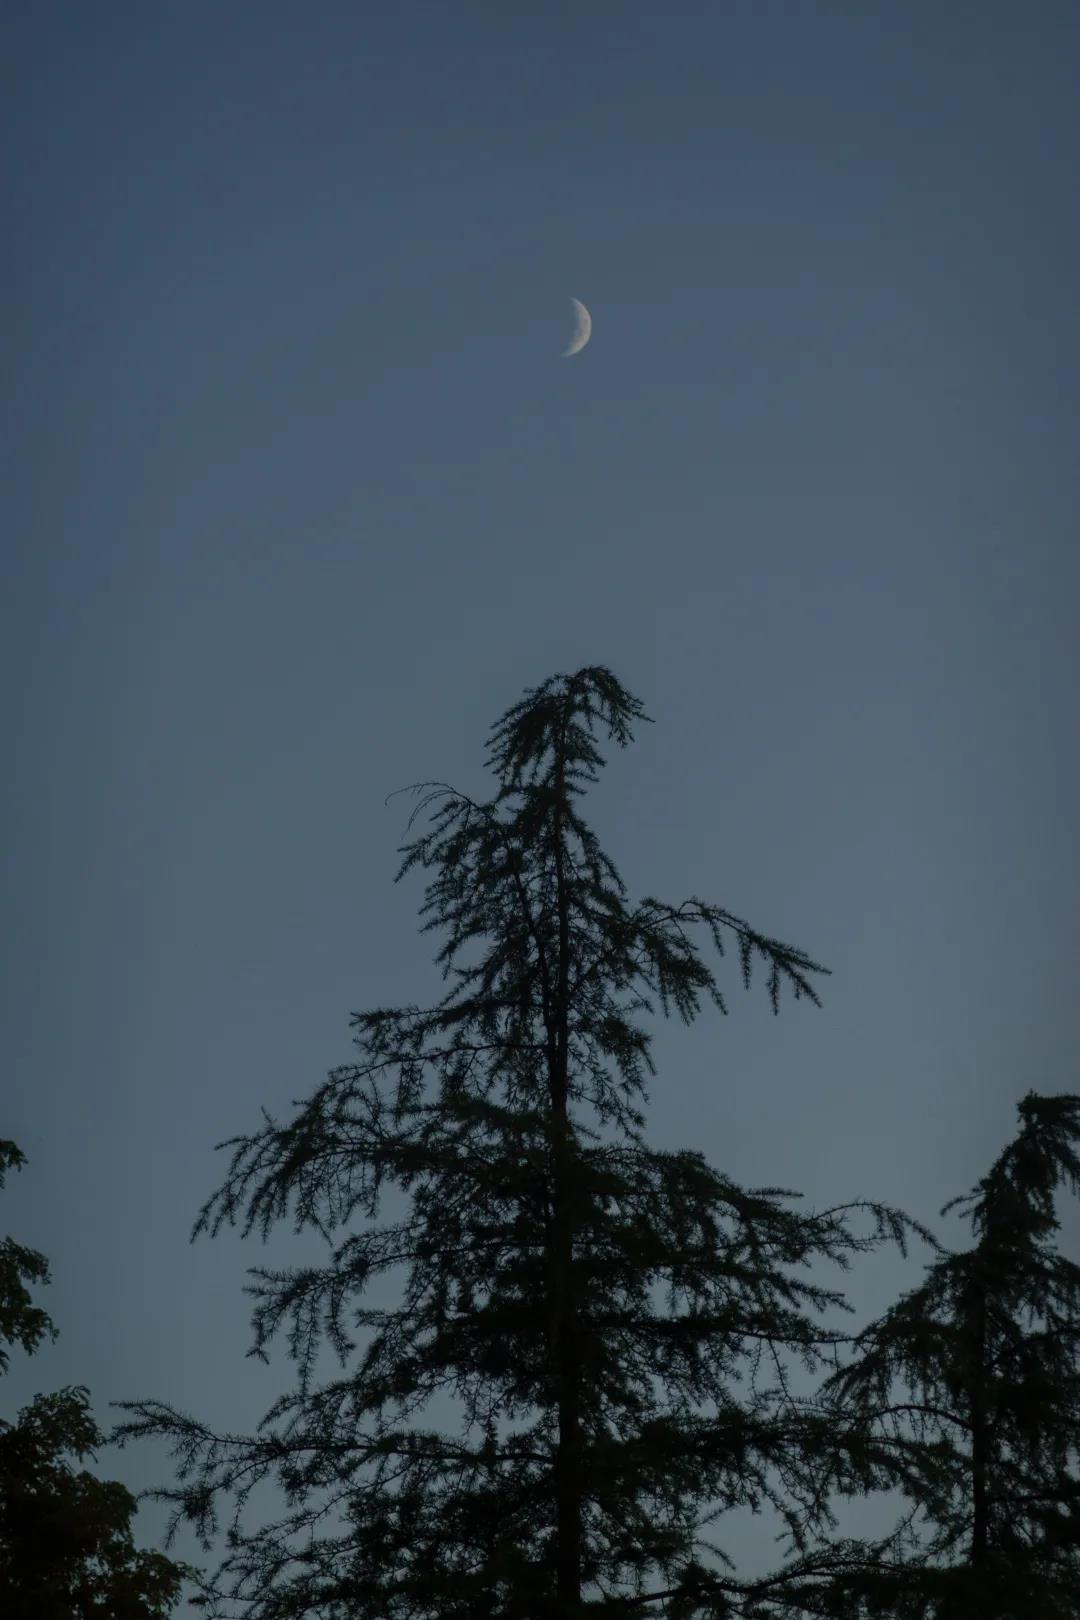 夜空下的树梢静立
夜晚里的青褐色